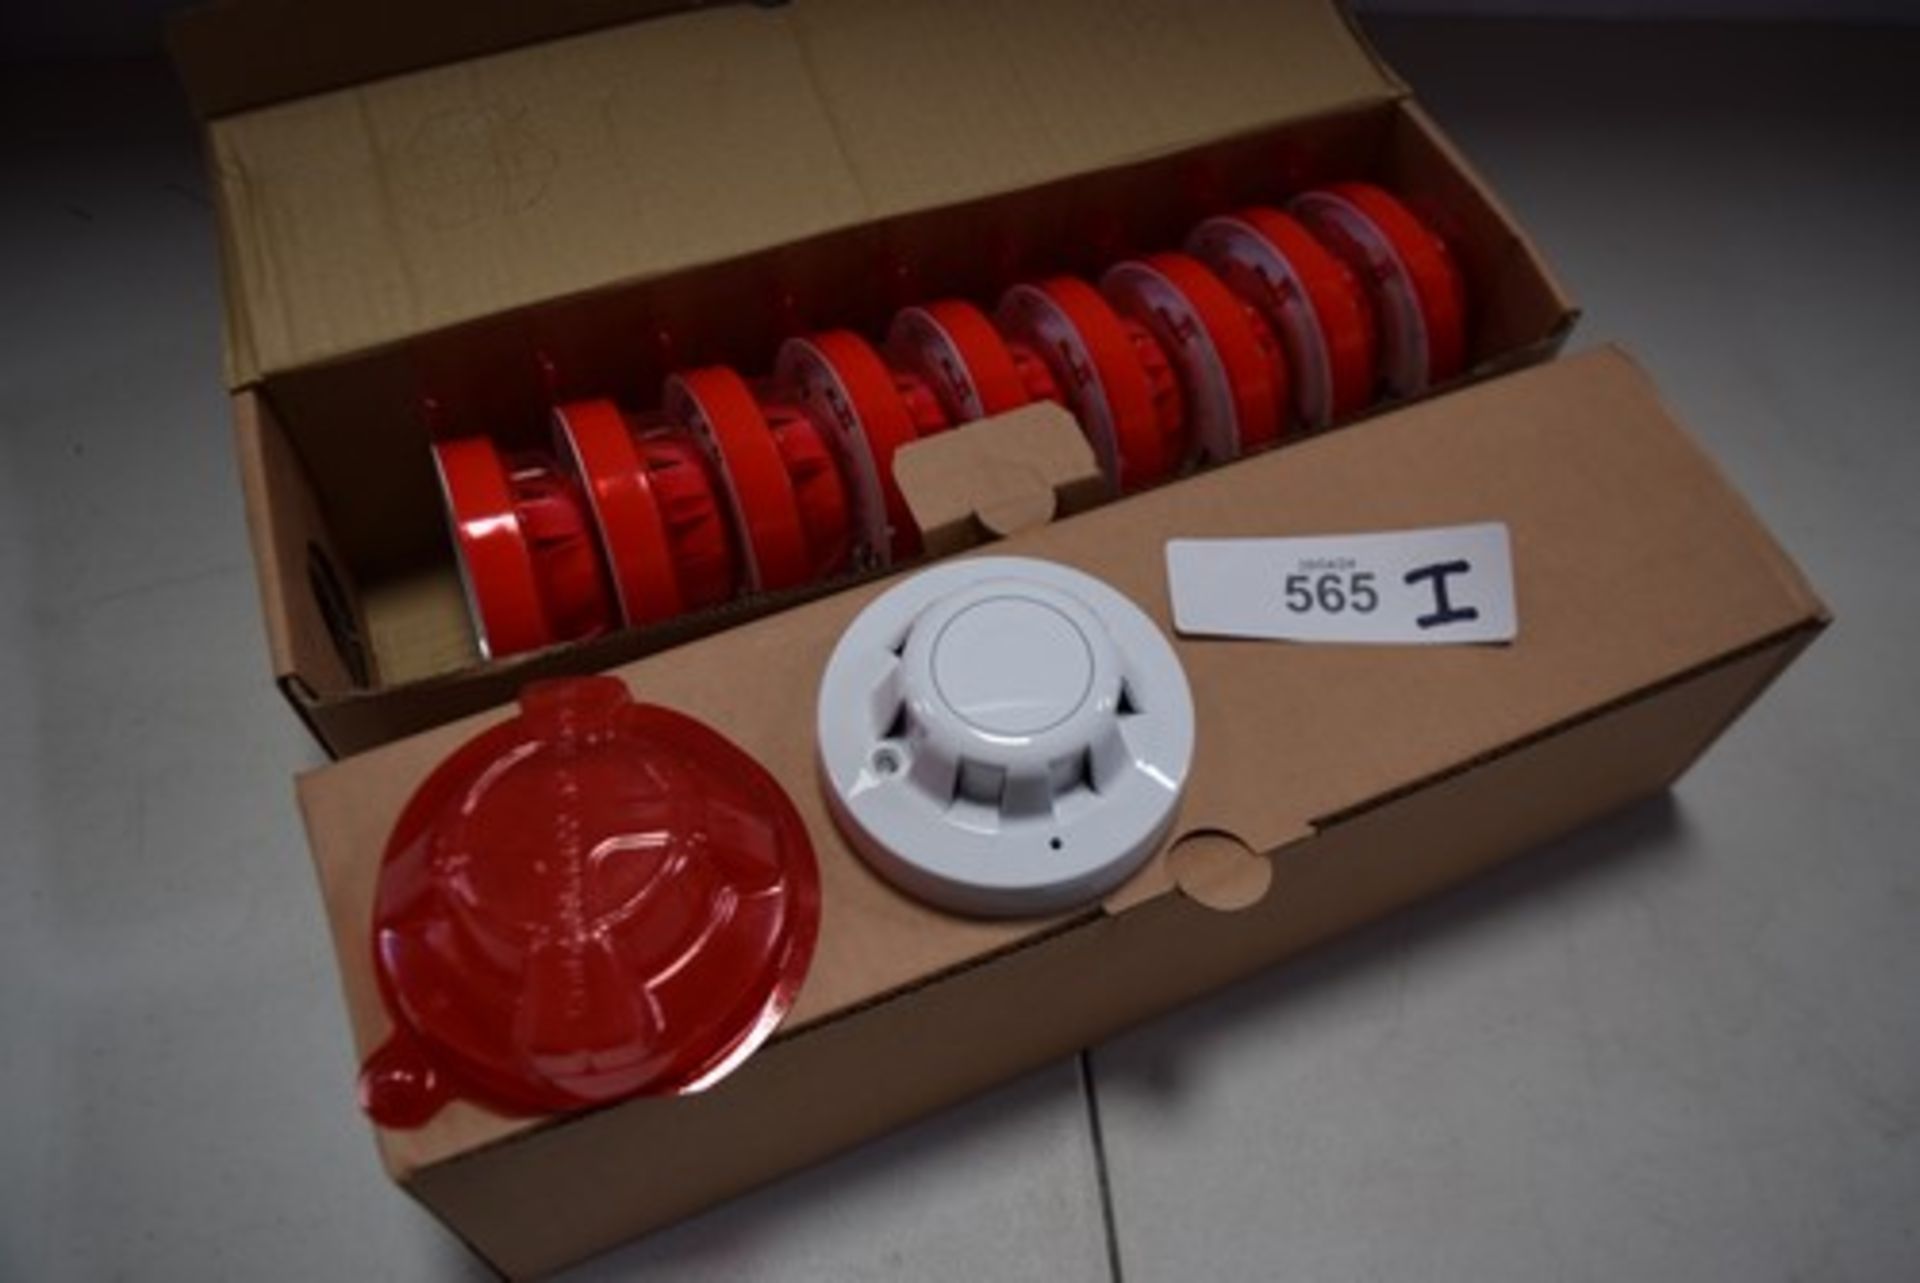 20 x Apollo optical smoke detectors, item No: XP95 - new in box (GS30A)